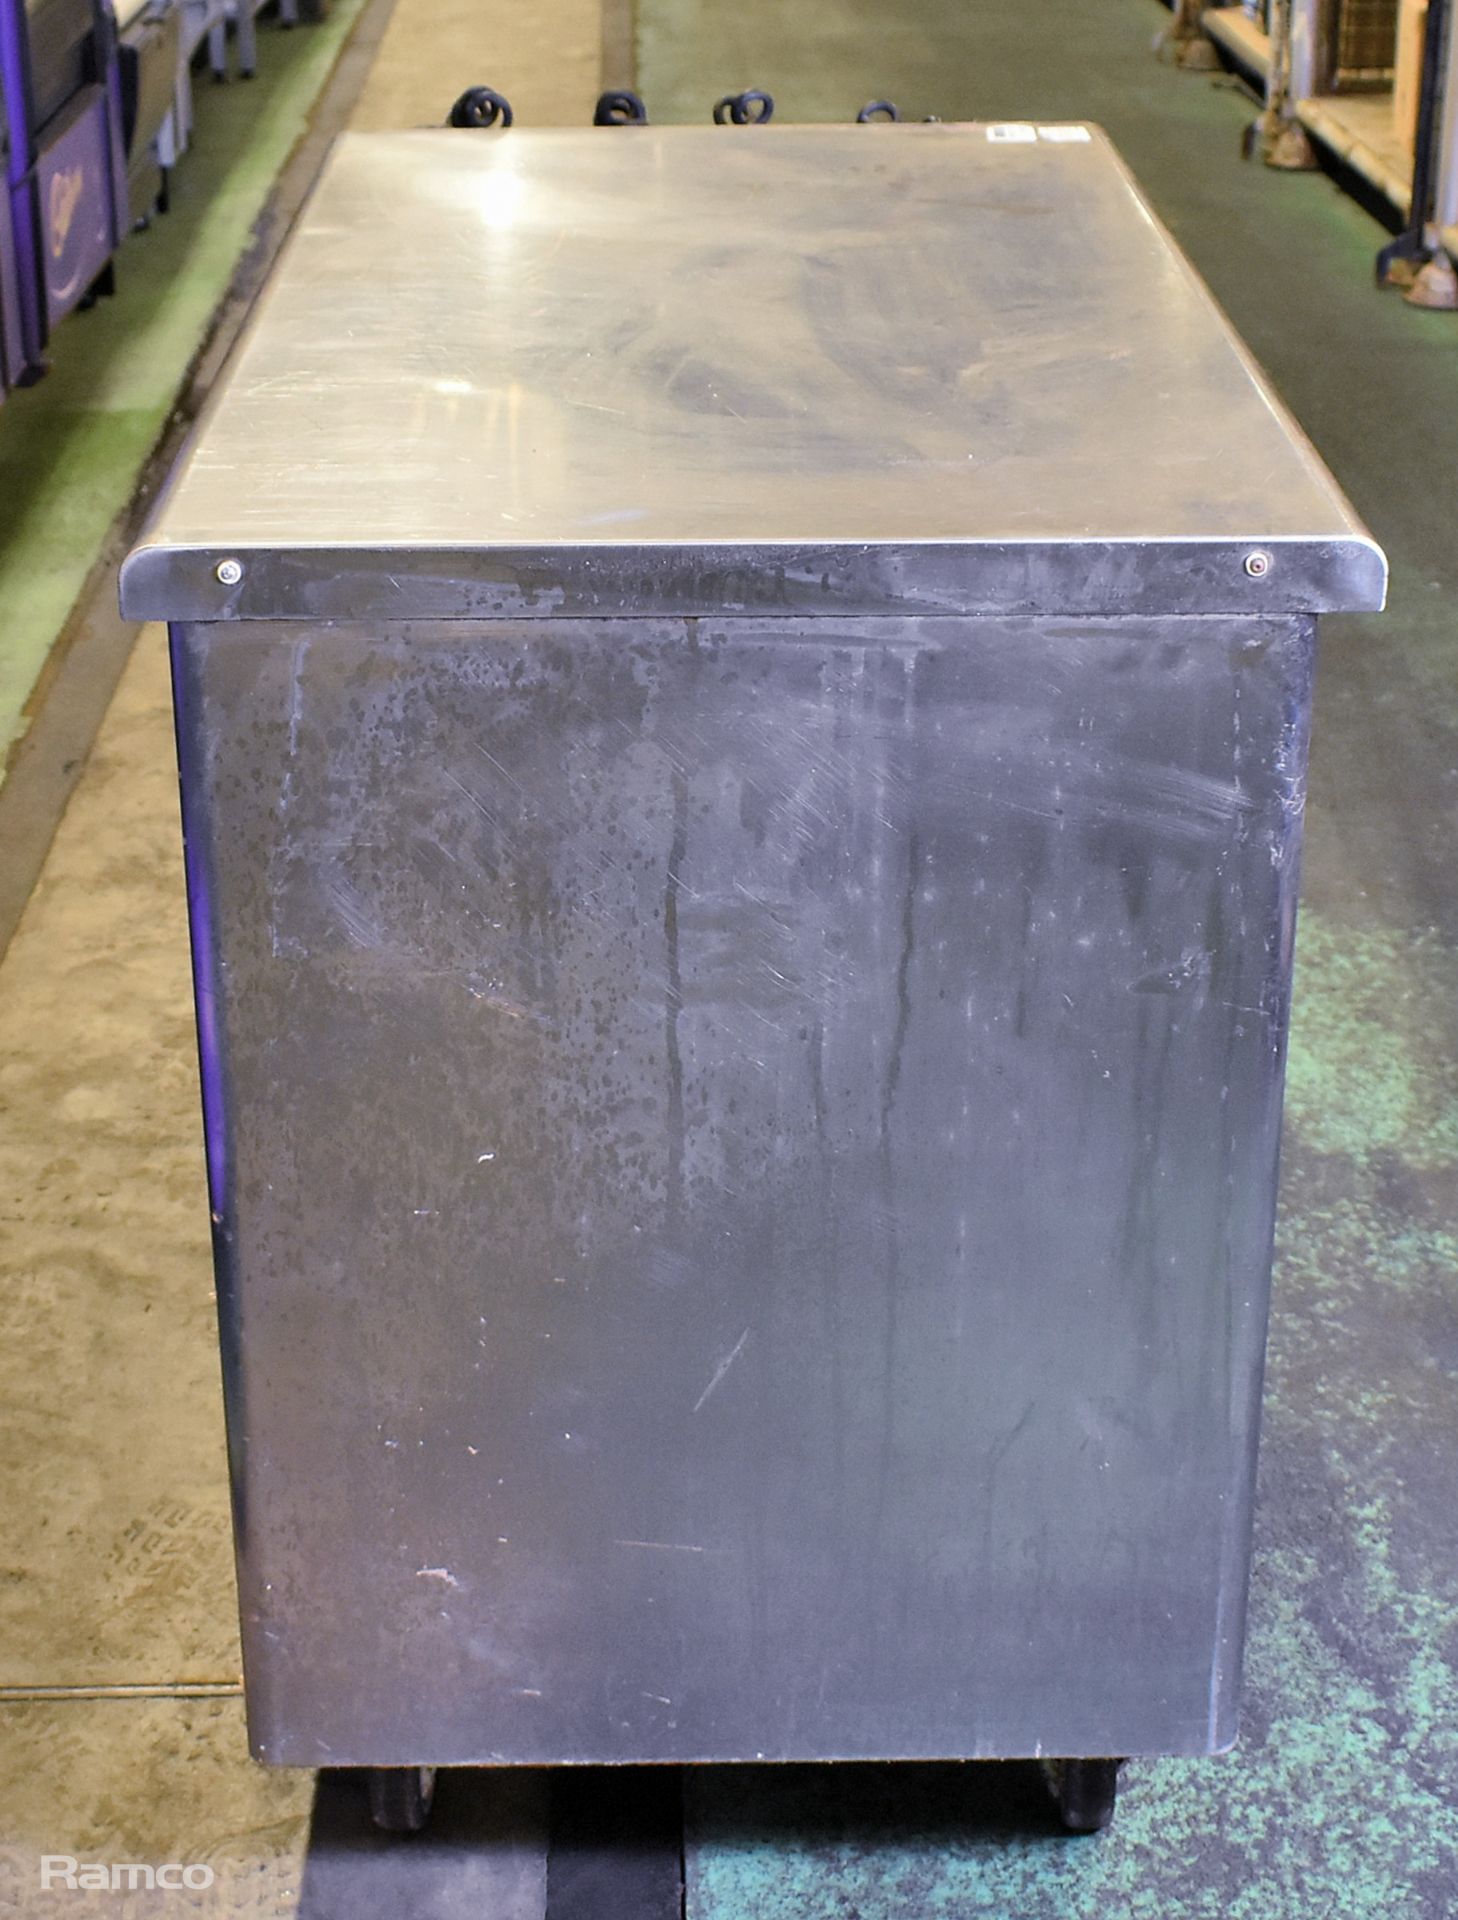 Lincat stainless steel double sliding door hot cupboard - W 1250 x D 650 x H 900mm - Image 7 of 7